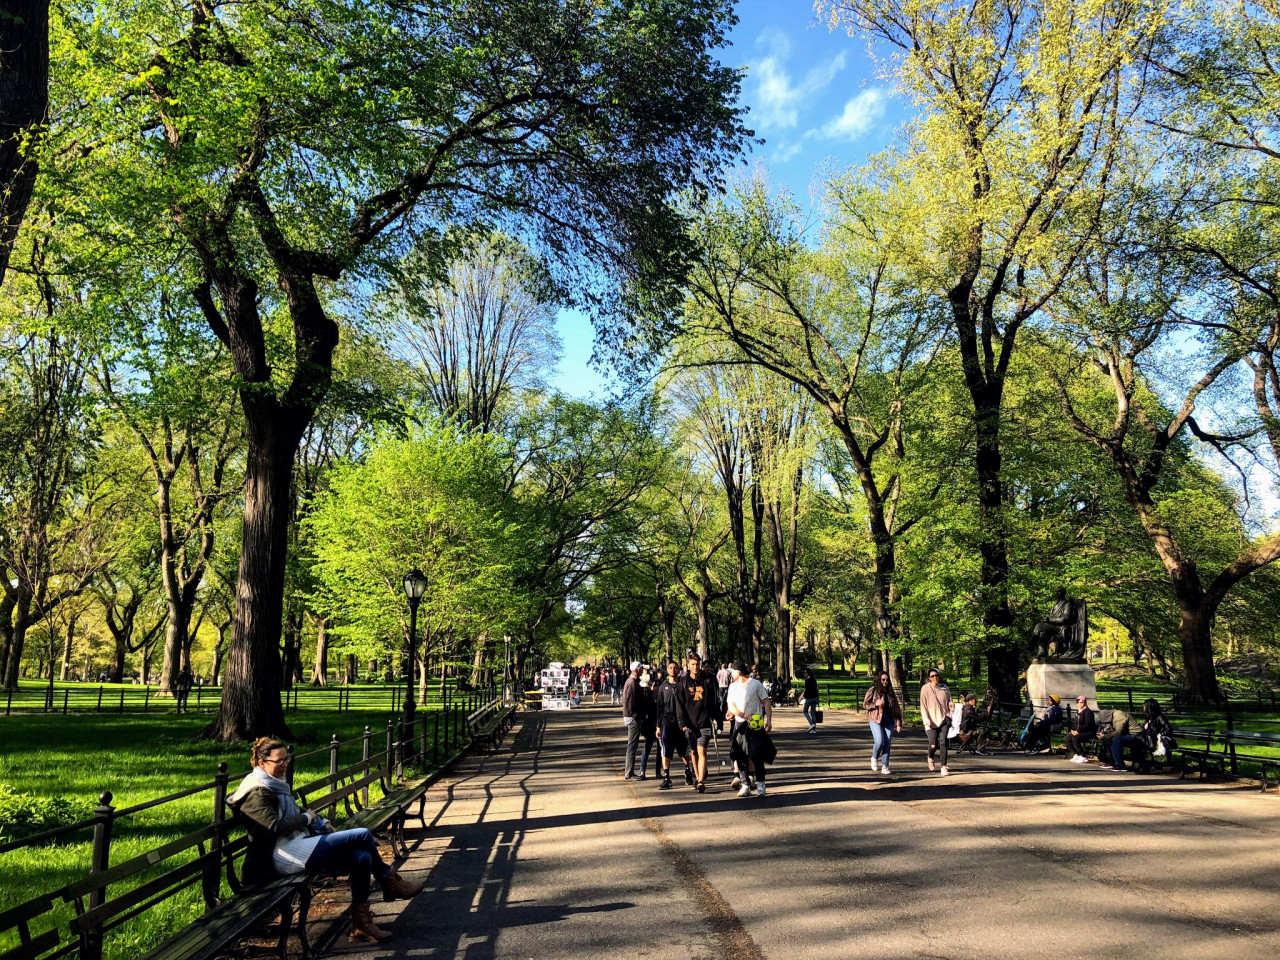 Spring in Central Park